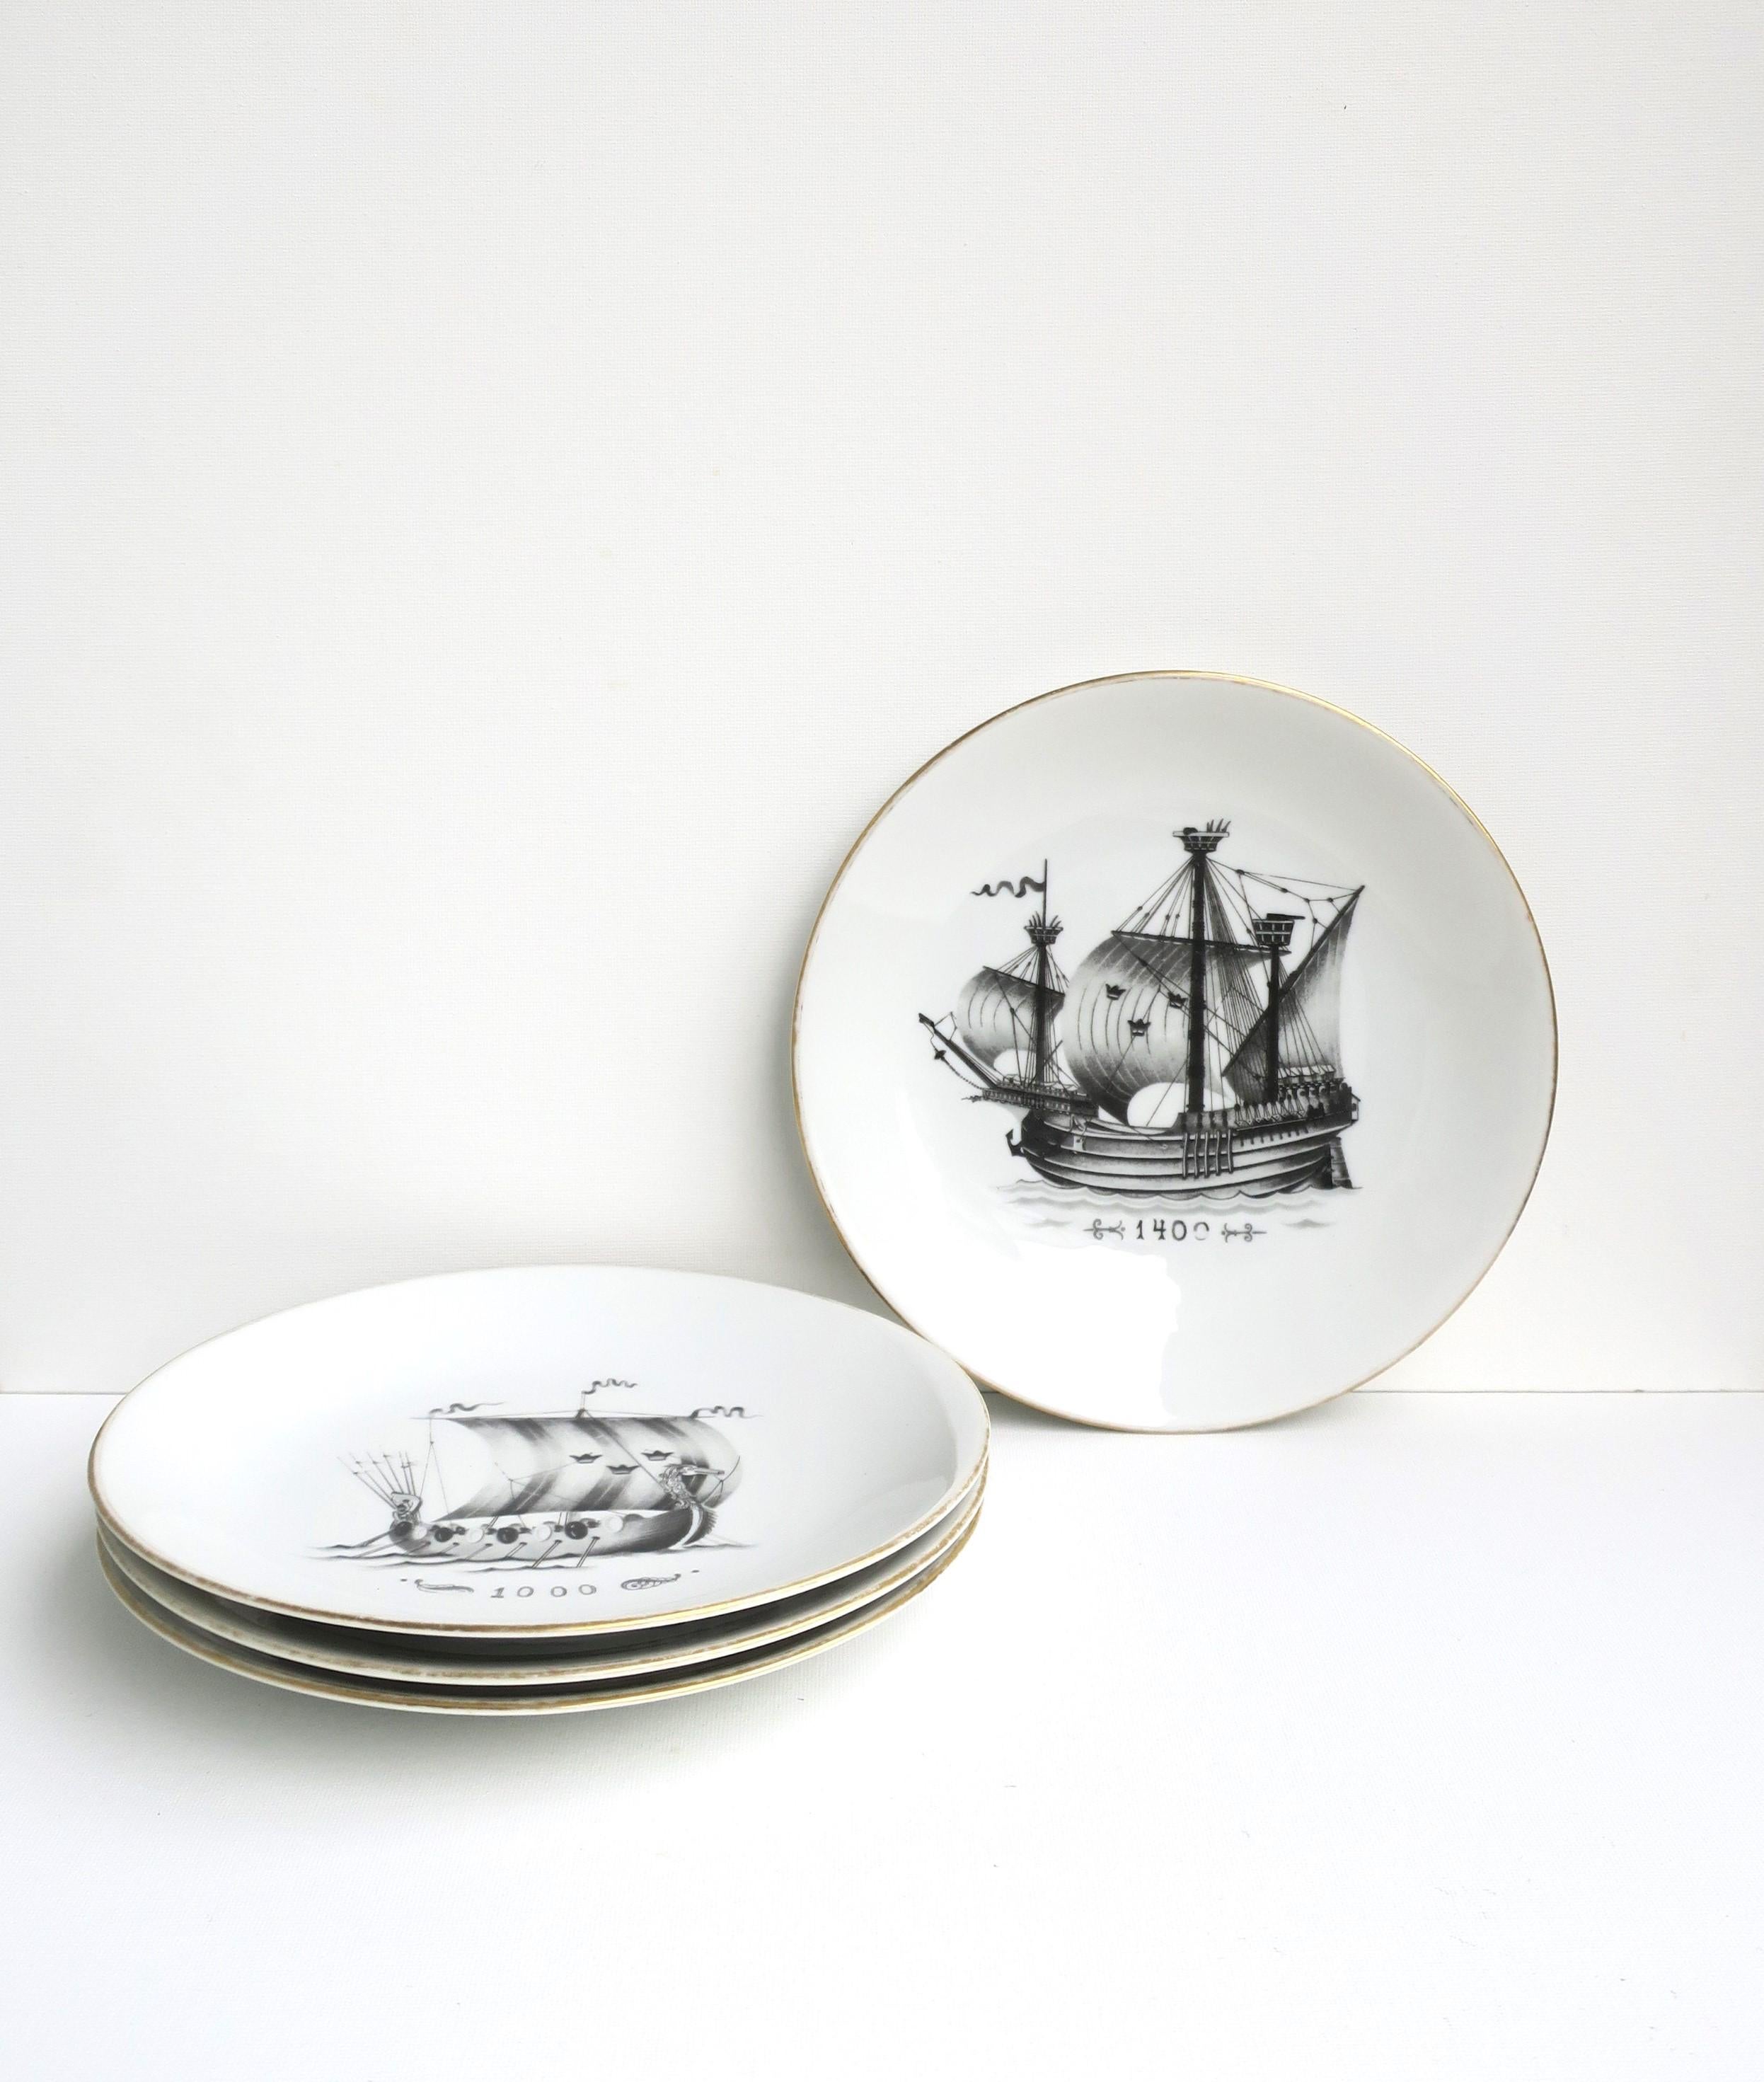 Ein schöner Satz von vier (4) schwedischen nautischen Porzellantellern von Rörstrand, um das 20. Jahrhundert, Schweden. Die Teller sind mit antiken Segelschiffen in Schwarz- und Kohletönen auf weißem Porzellangrund gestaltet, der Rand der Teller ist